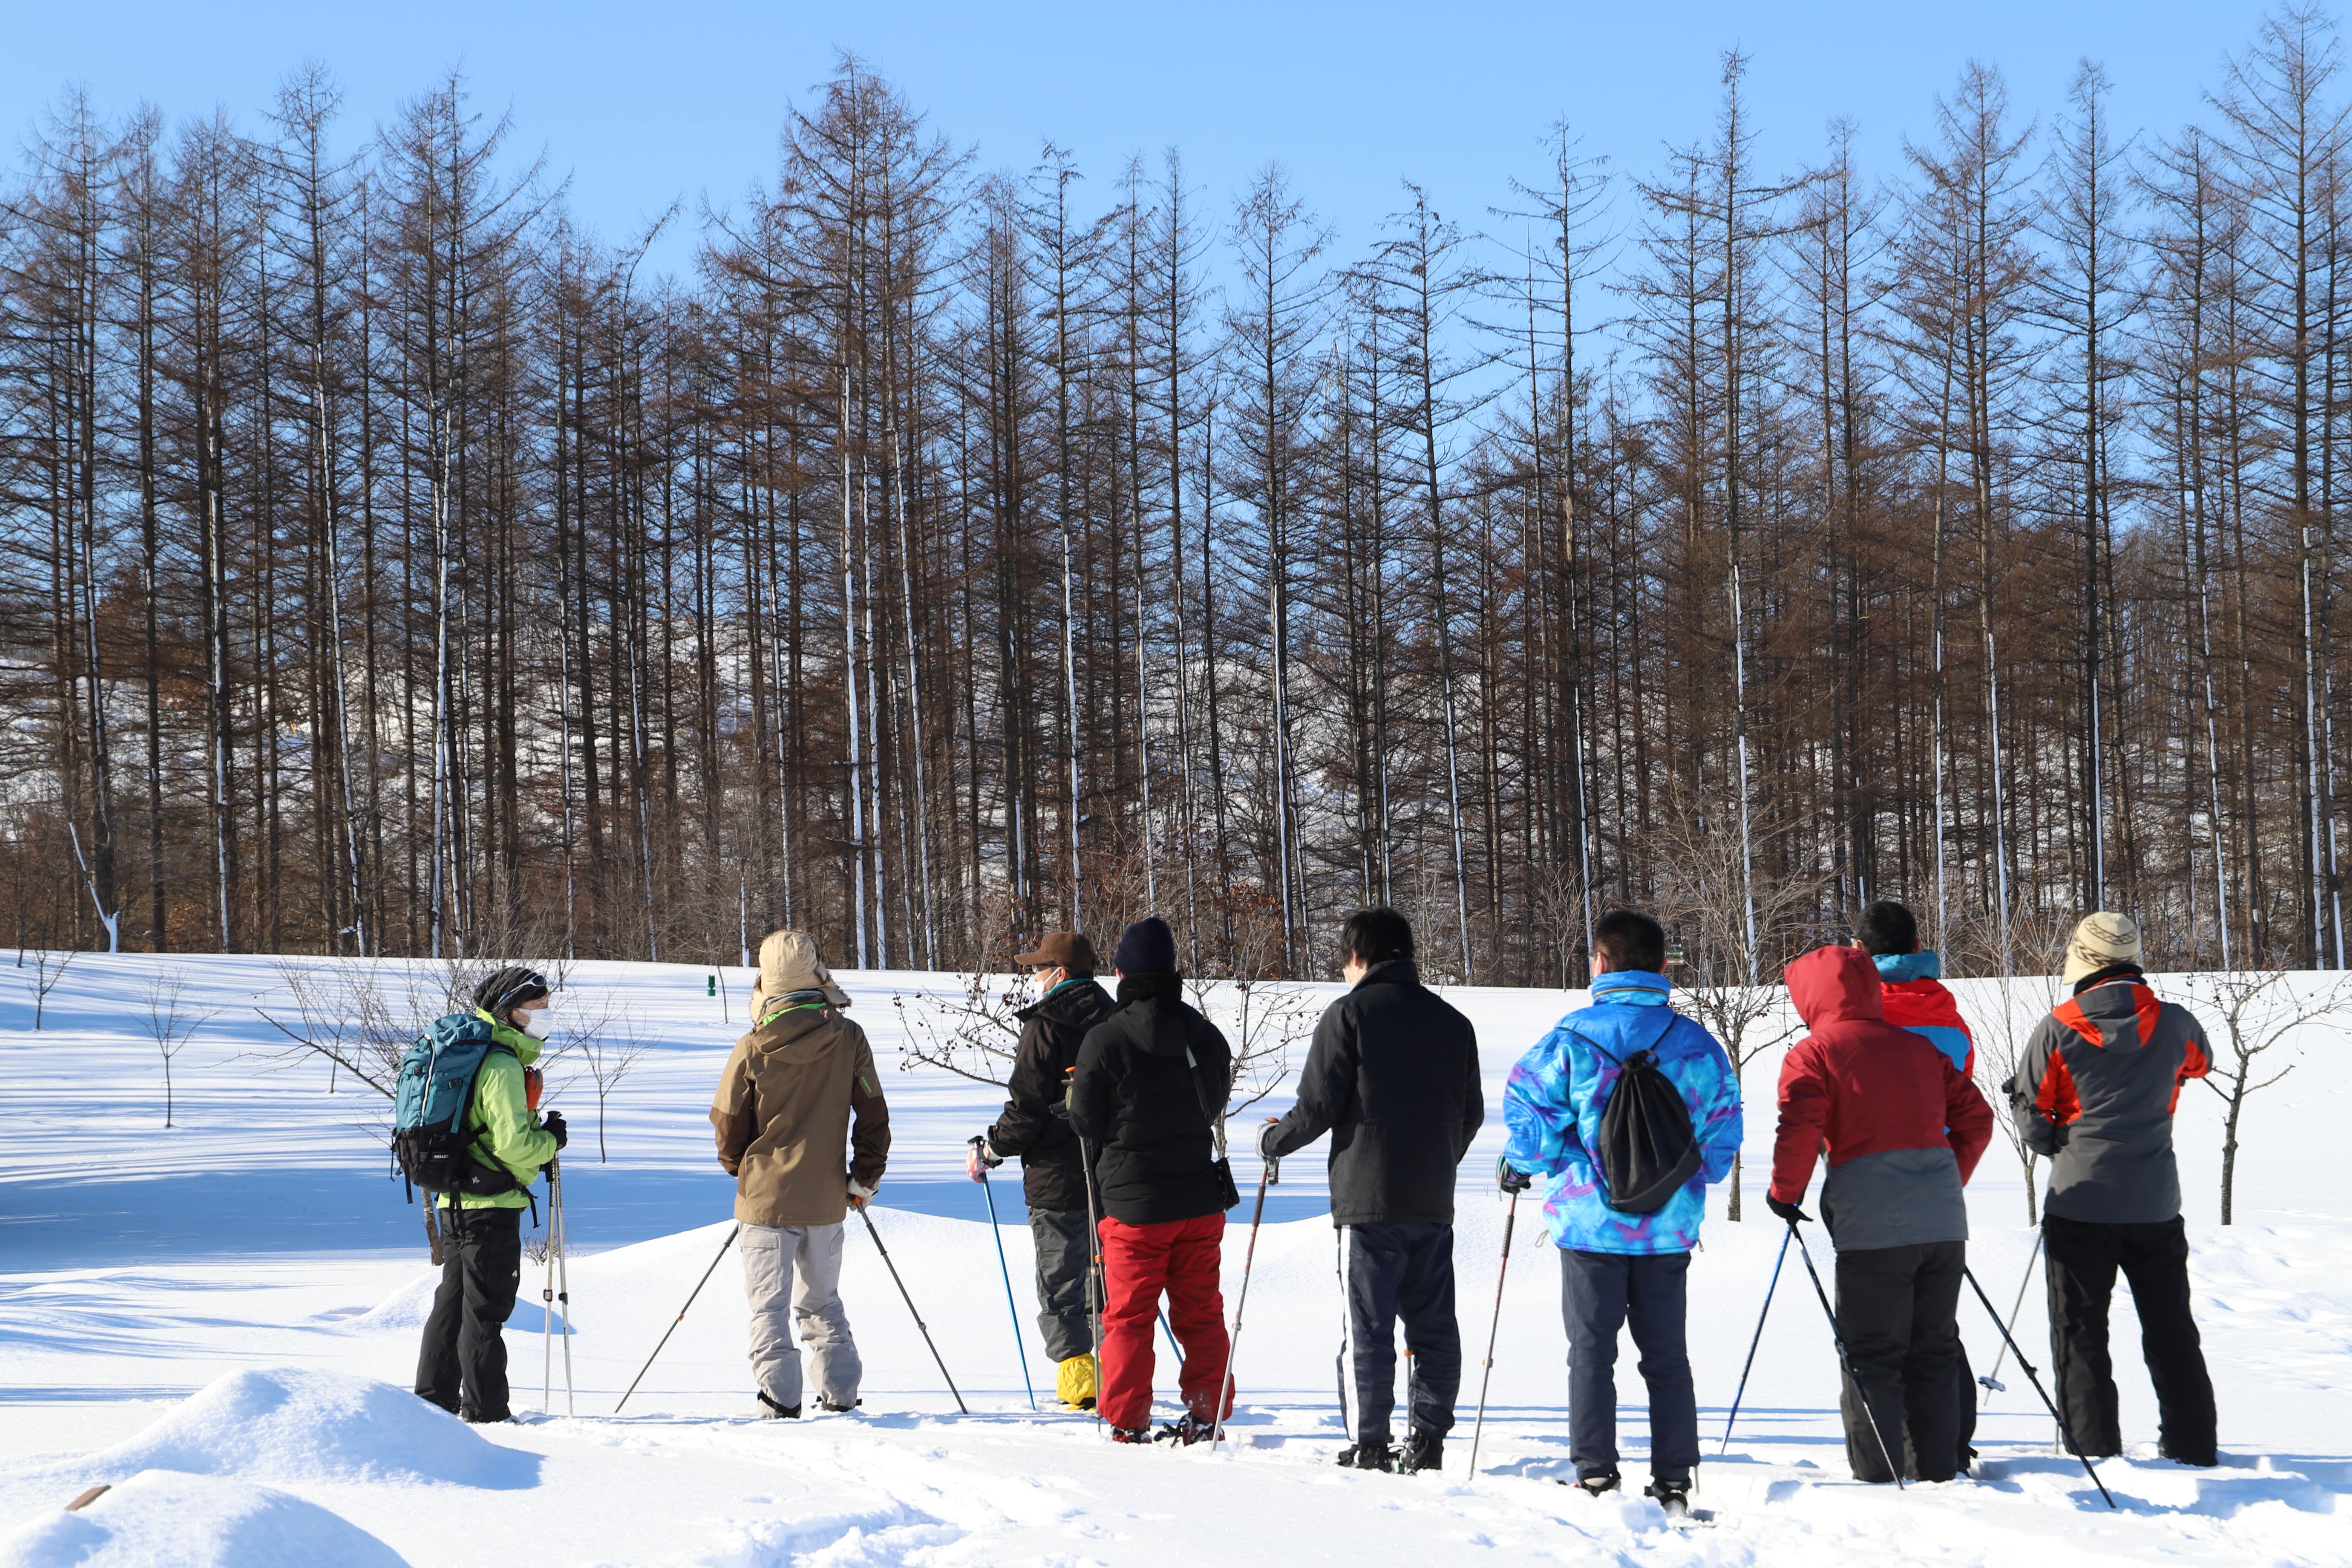 ネイチャーガイドの案内で雪原を歩くスノーシューも、自然との関わりを知るために良い経験になりました